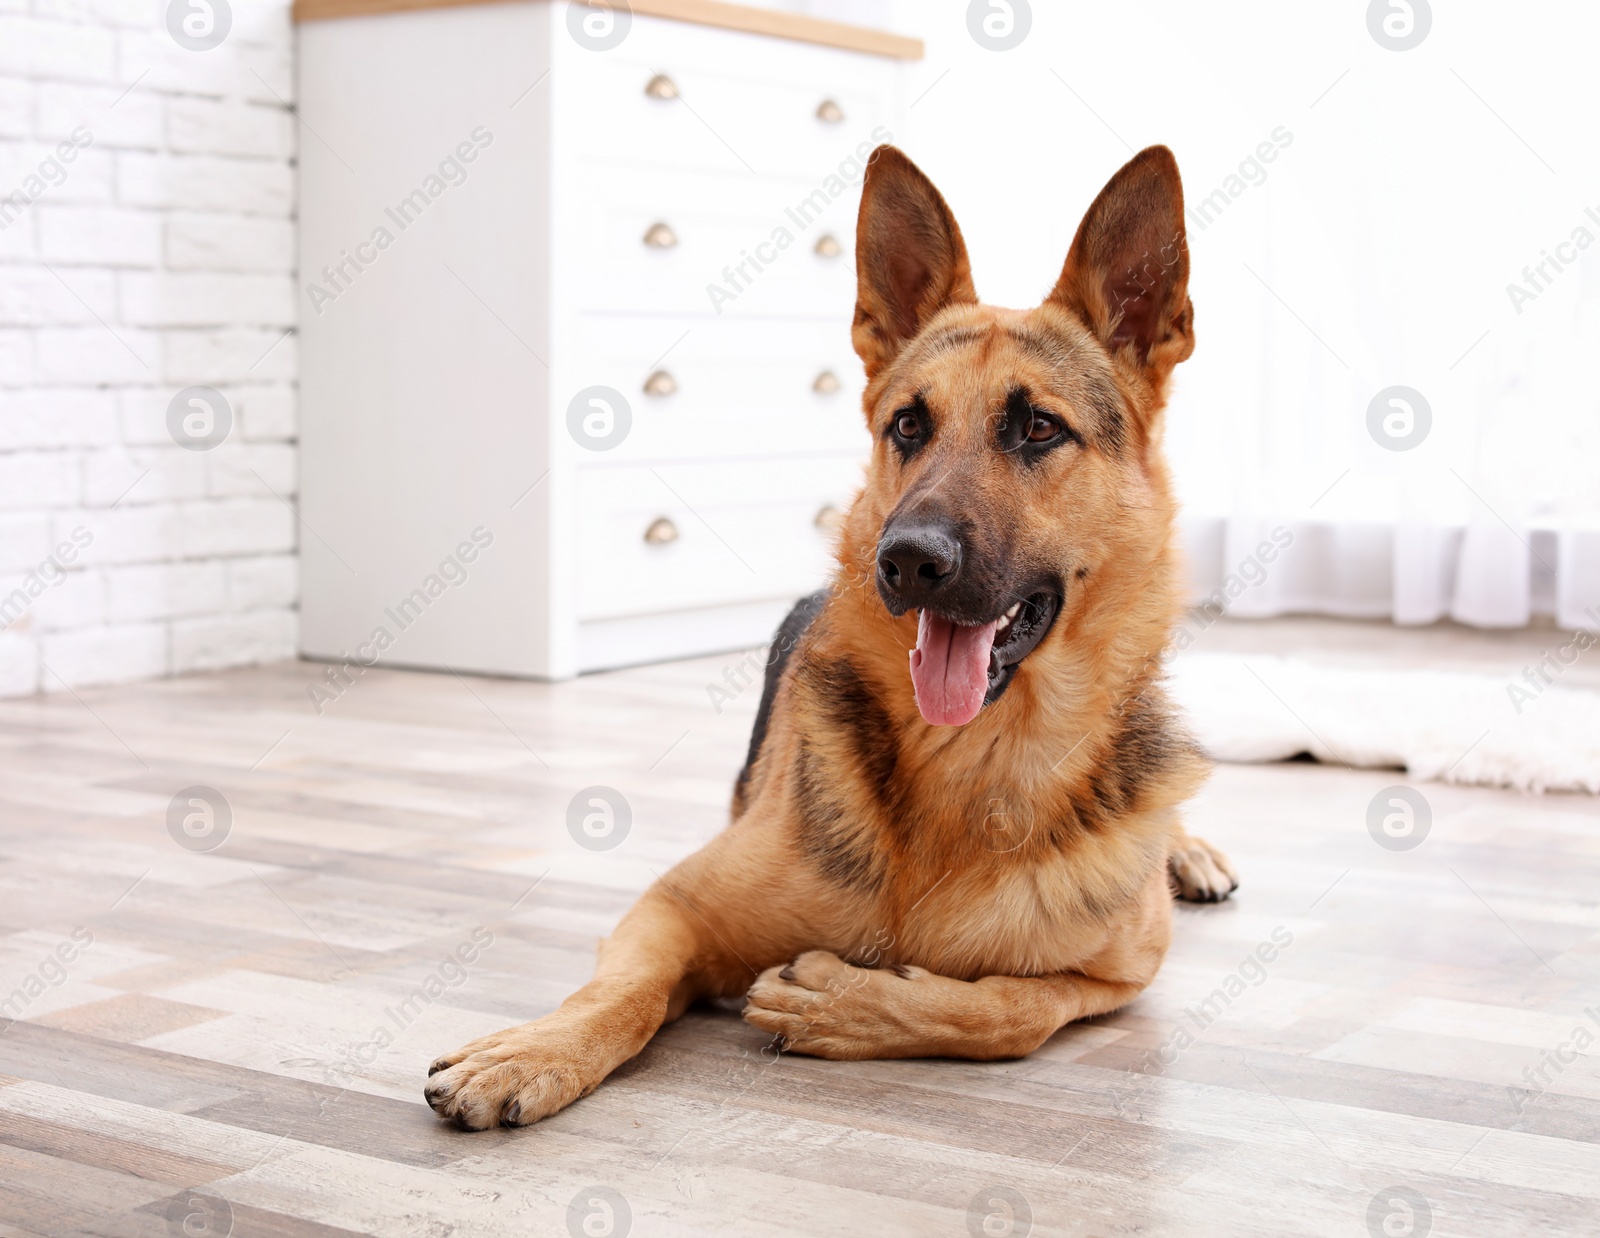 Photo of Adorable German shepherd dog lying on floor indoors